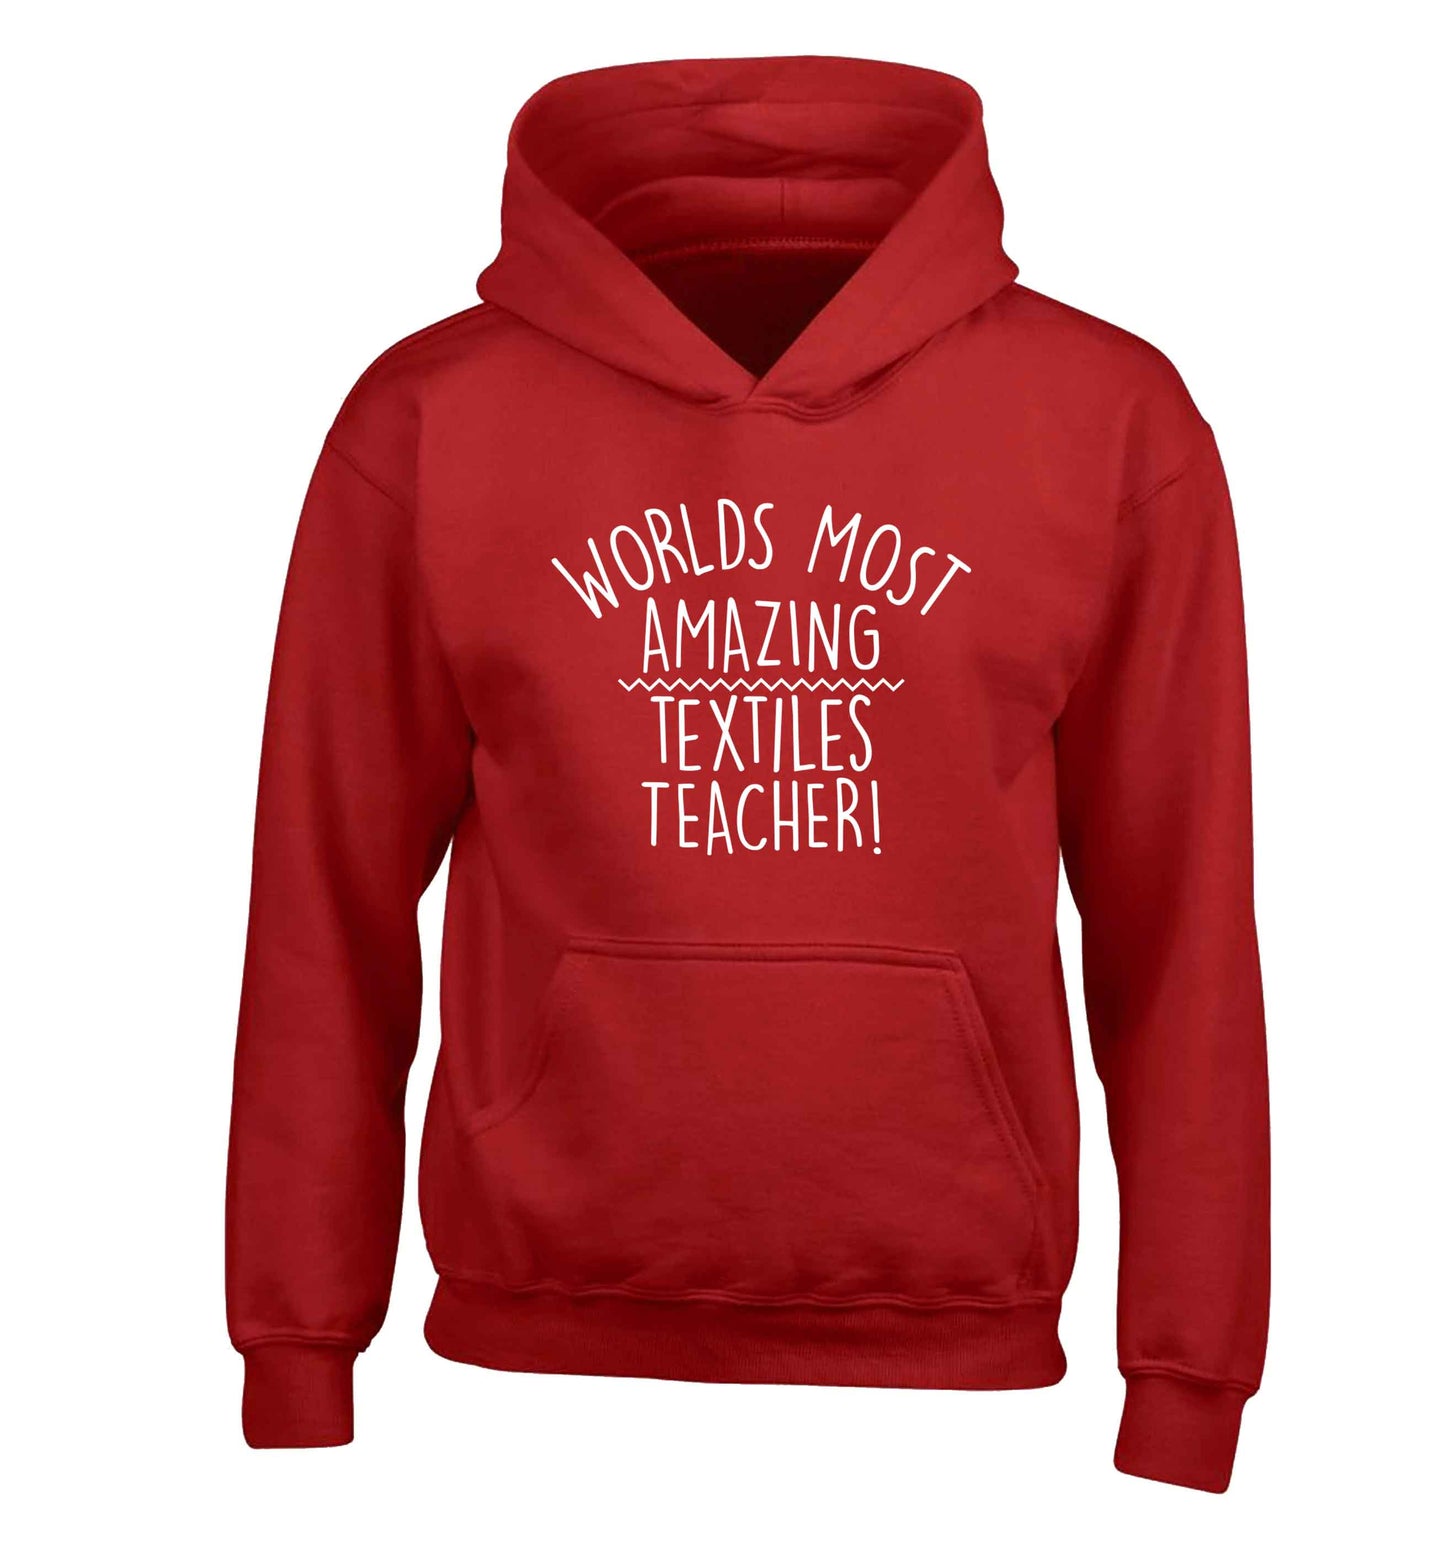 Worlds most amazing textiles teacher children's red hoodie 12-13 Years